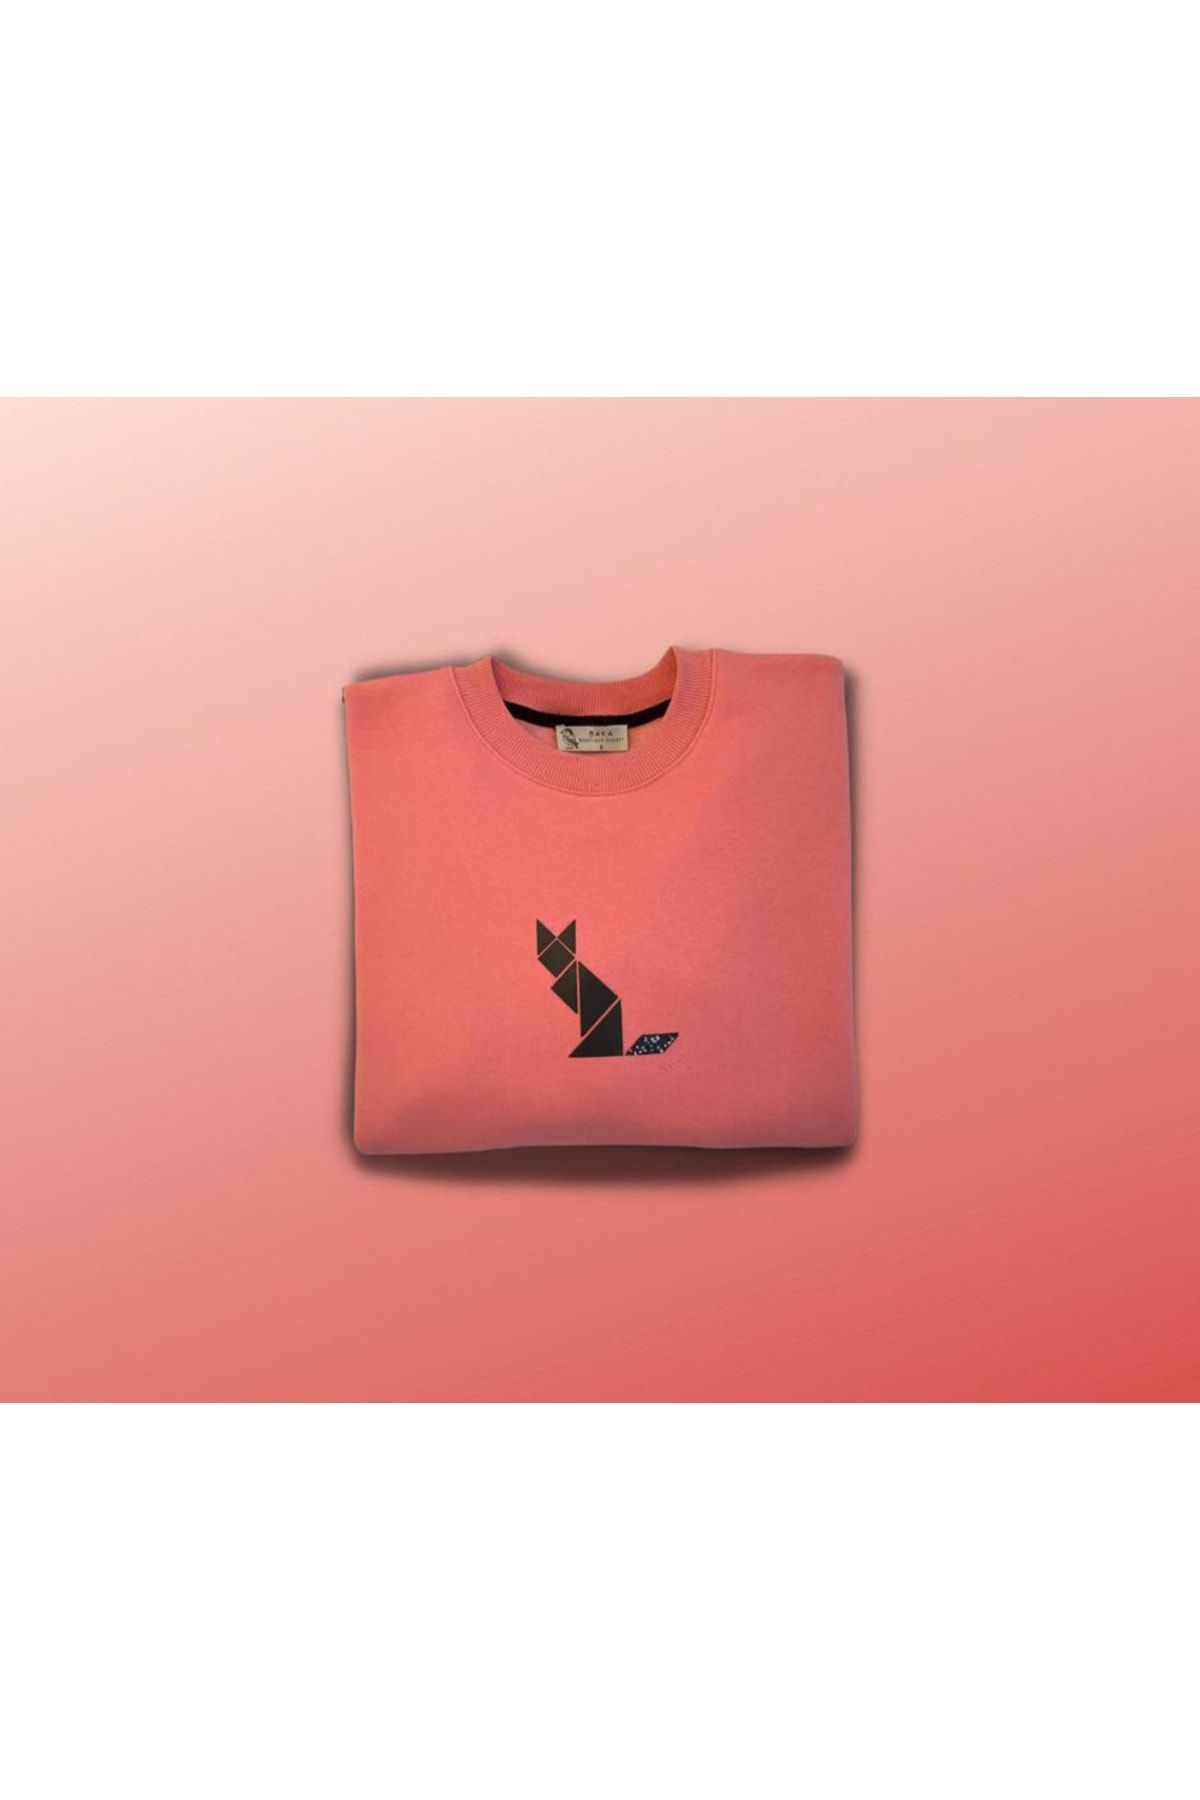 saka “kedi” 3 Iplik Baskılı Oversize Sweatshirt